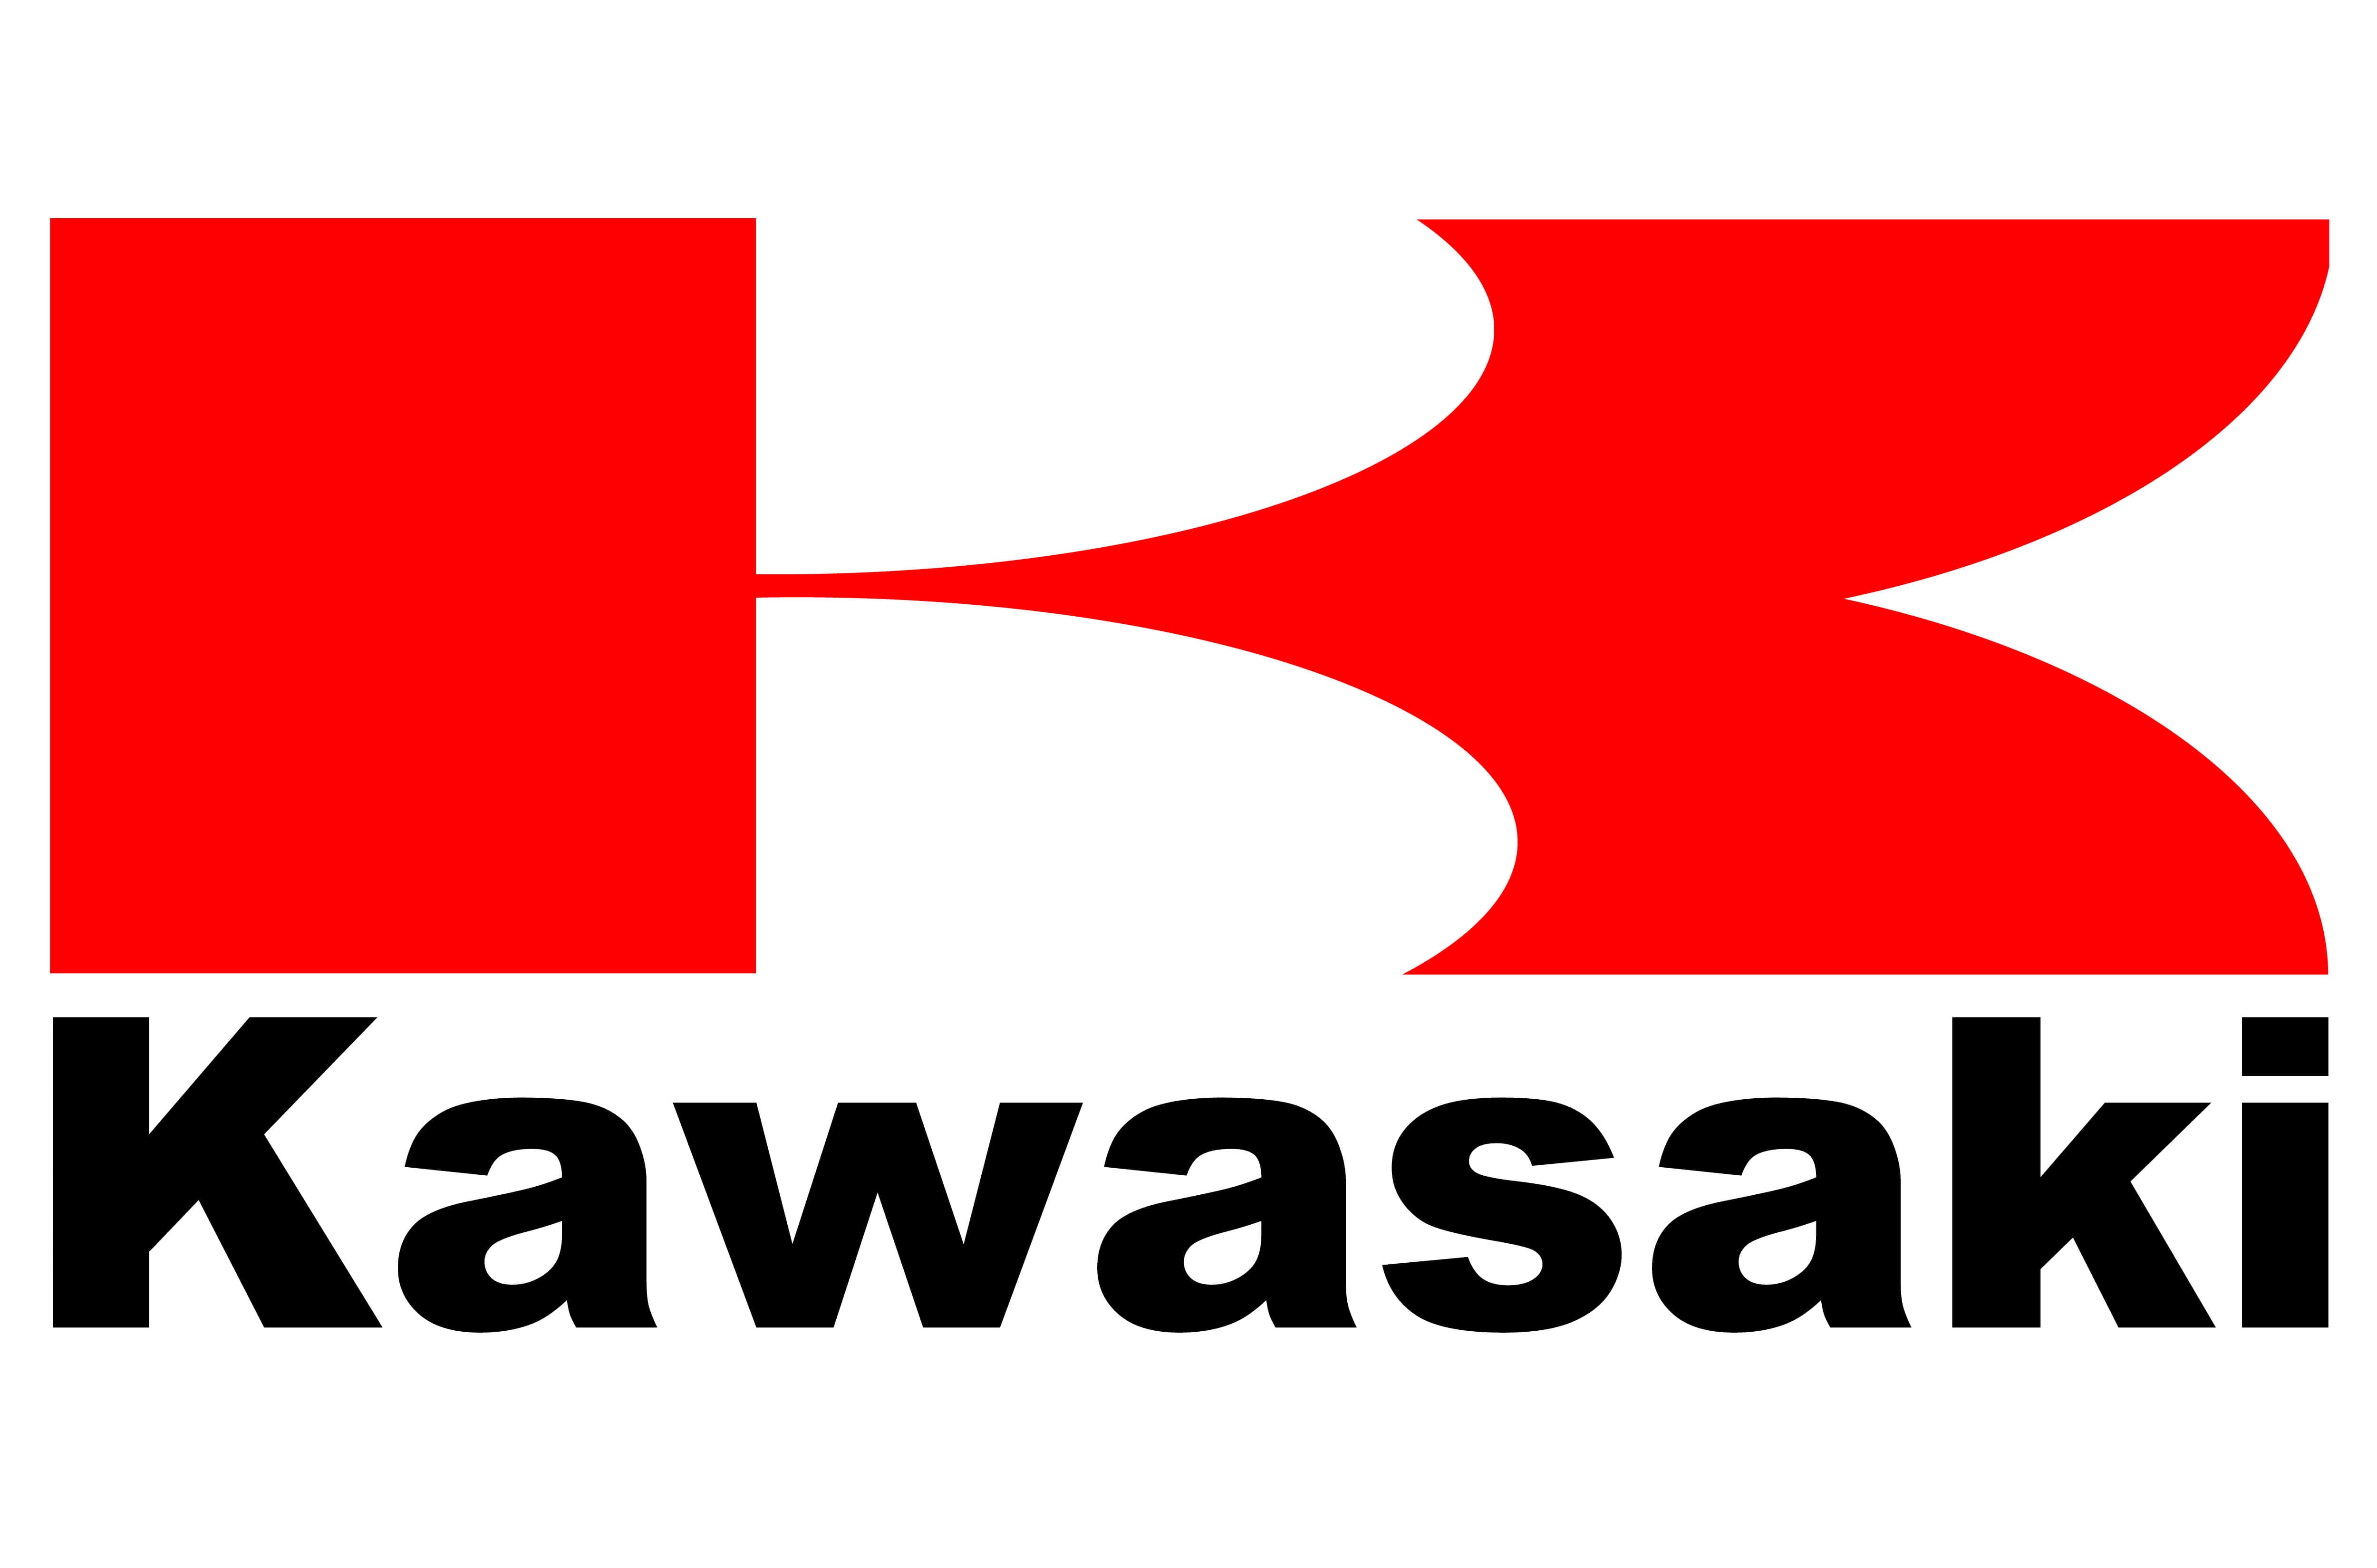 Kawasaki Logo and symbol, meaning, history, WebP, brand